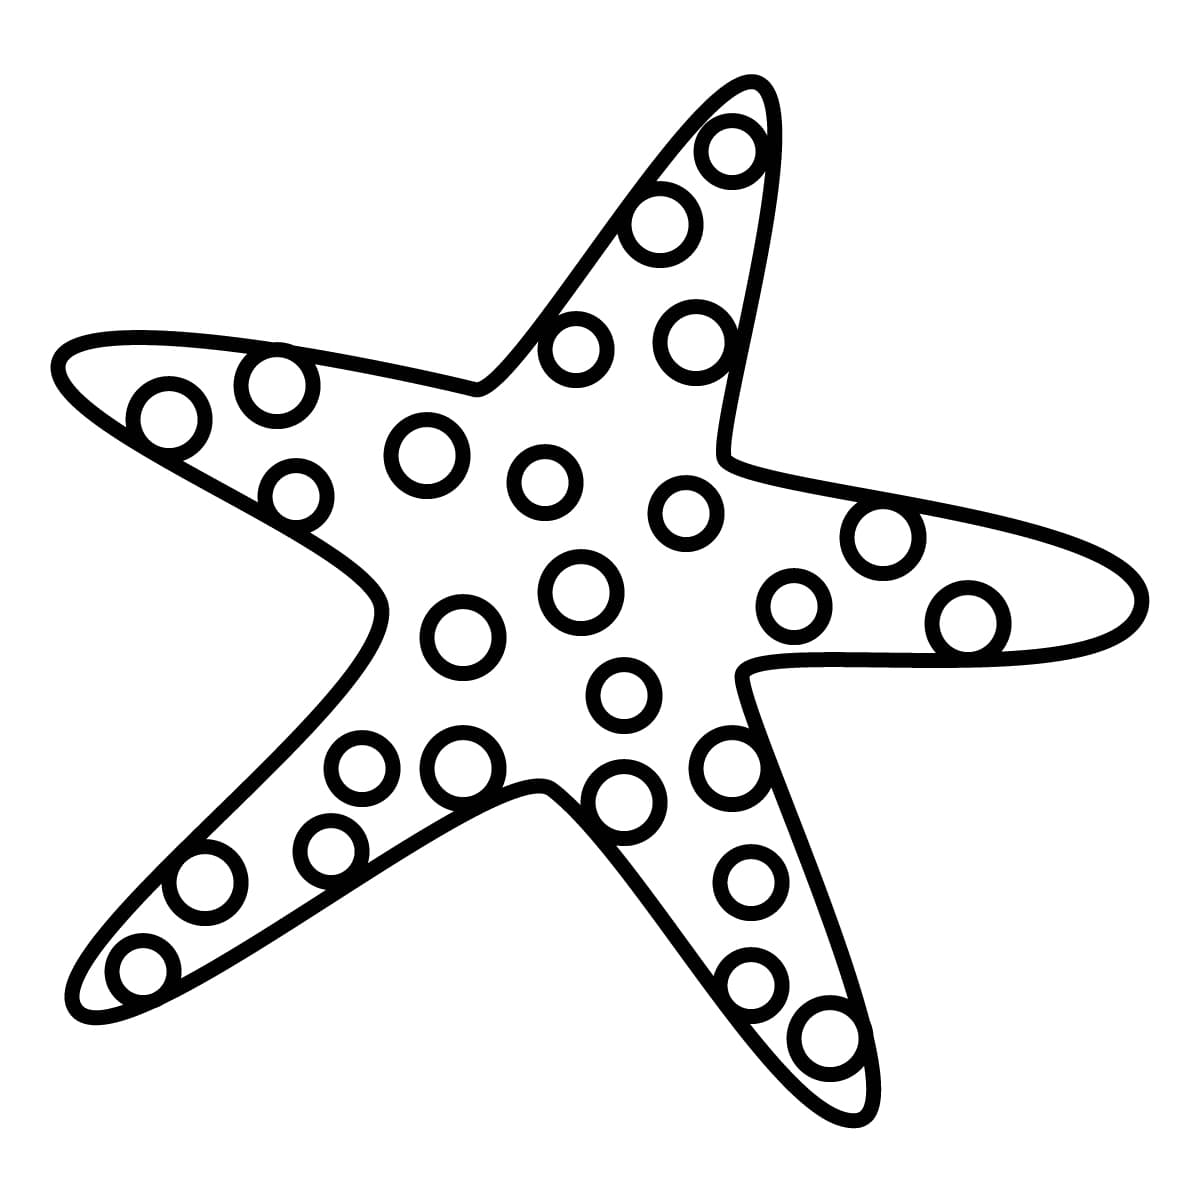 Dibujo de estrella de mar para colorear e imprimir - Dibujos y colores